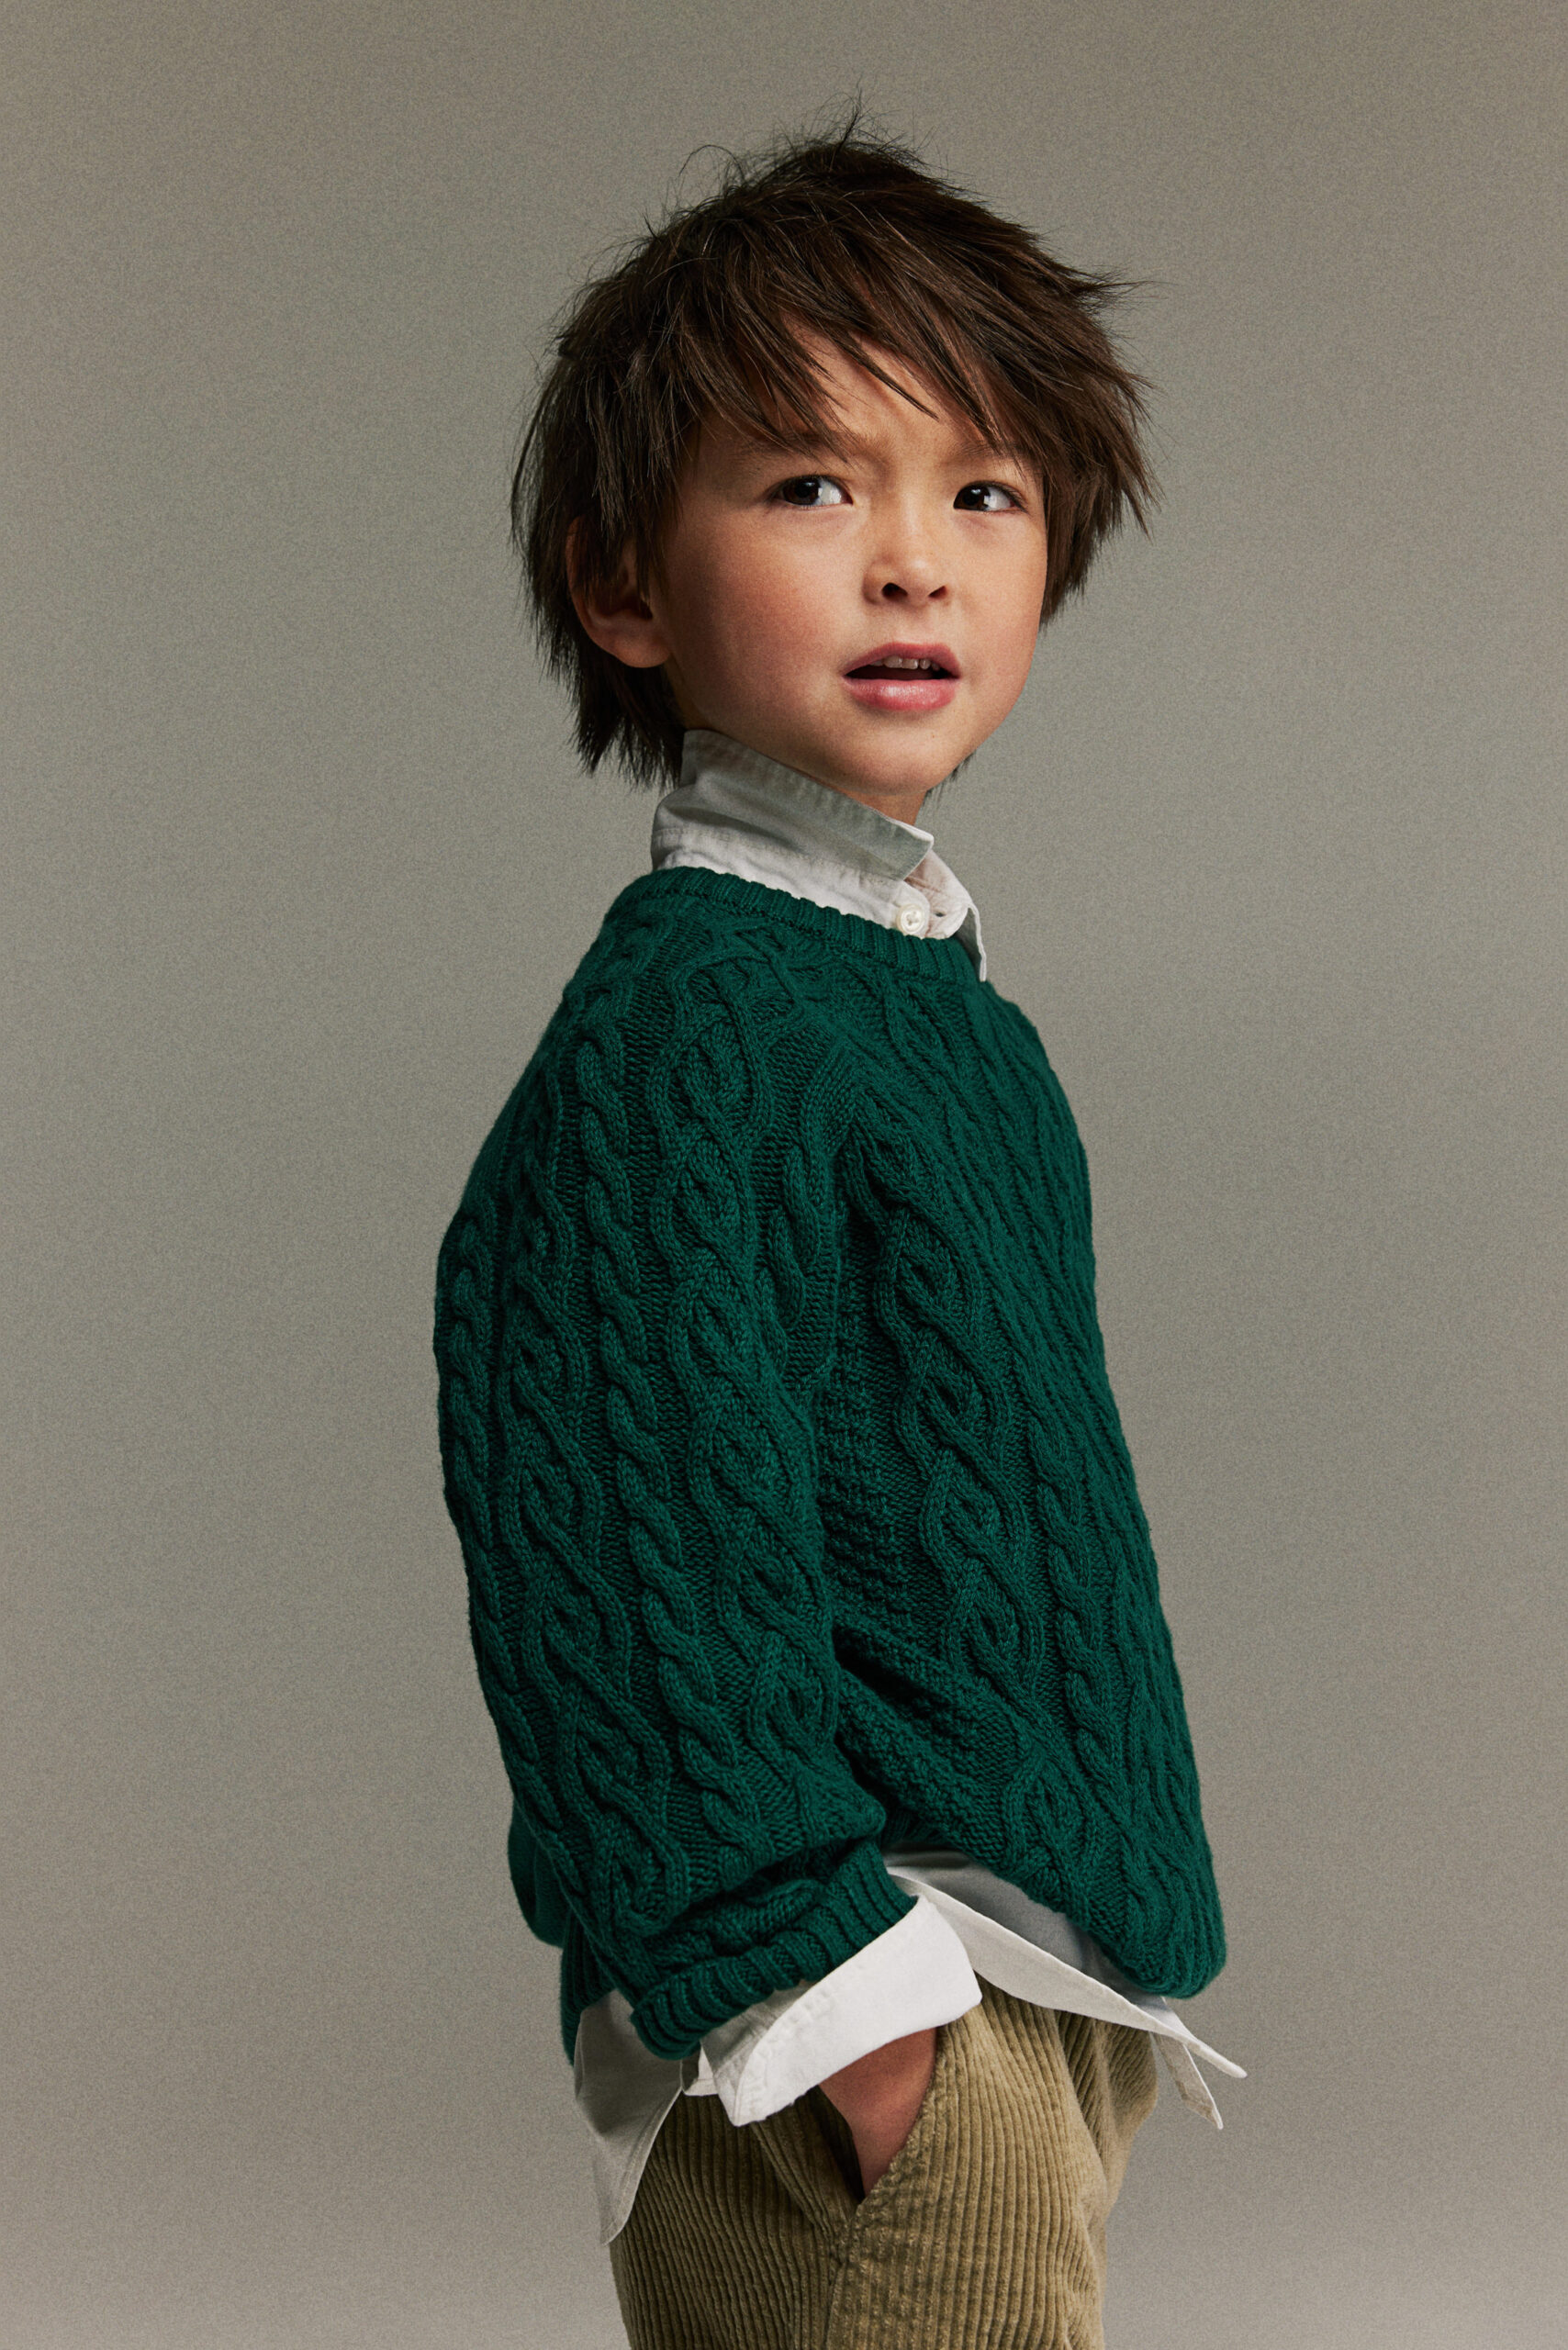 Boy wearing forest green knit sweater.